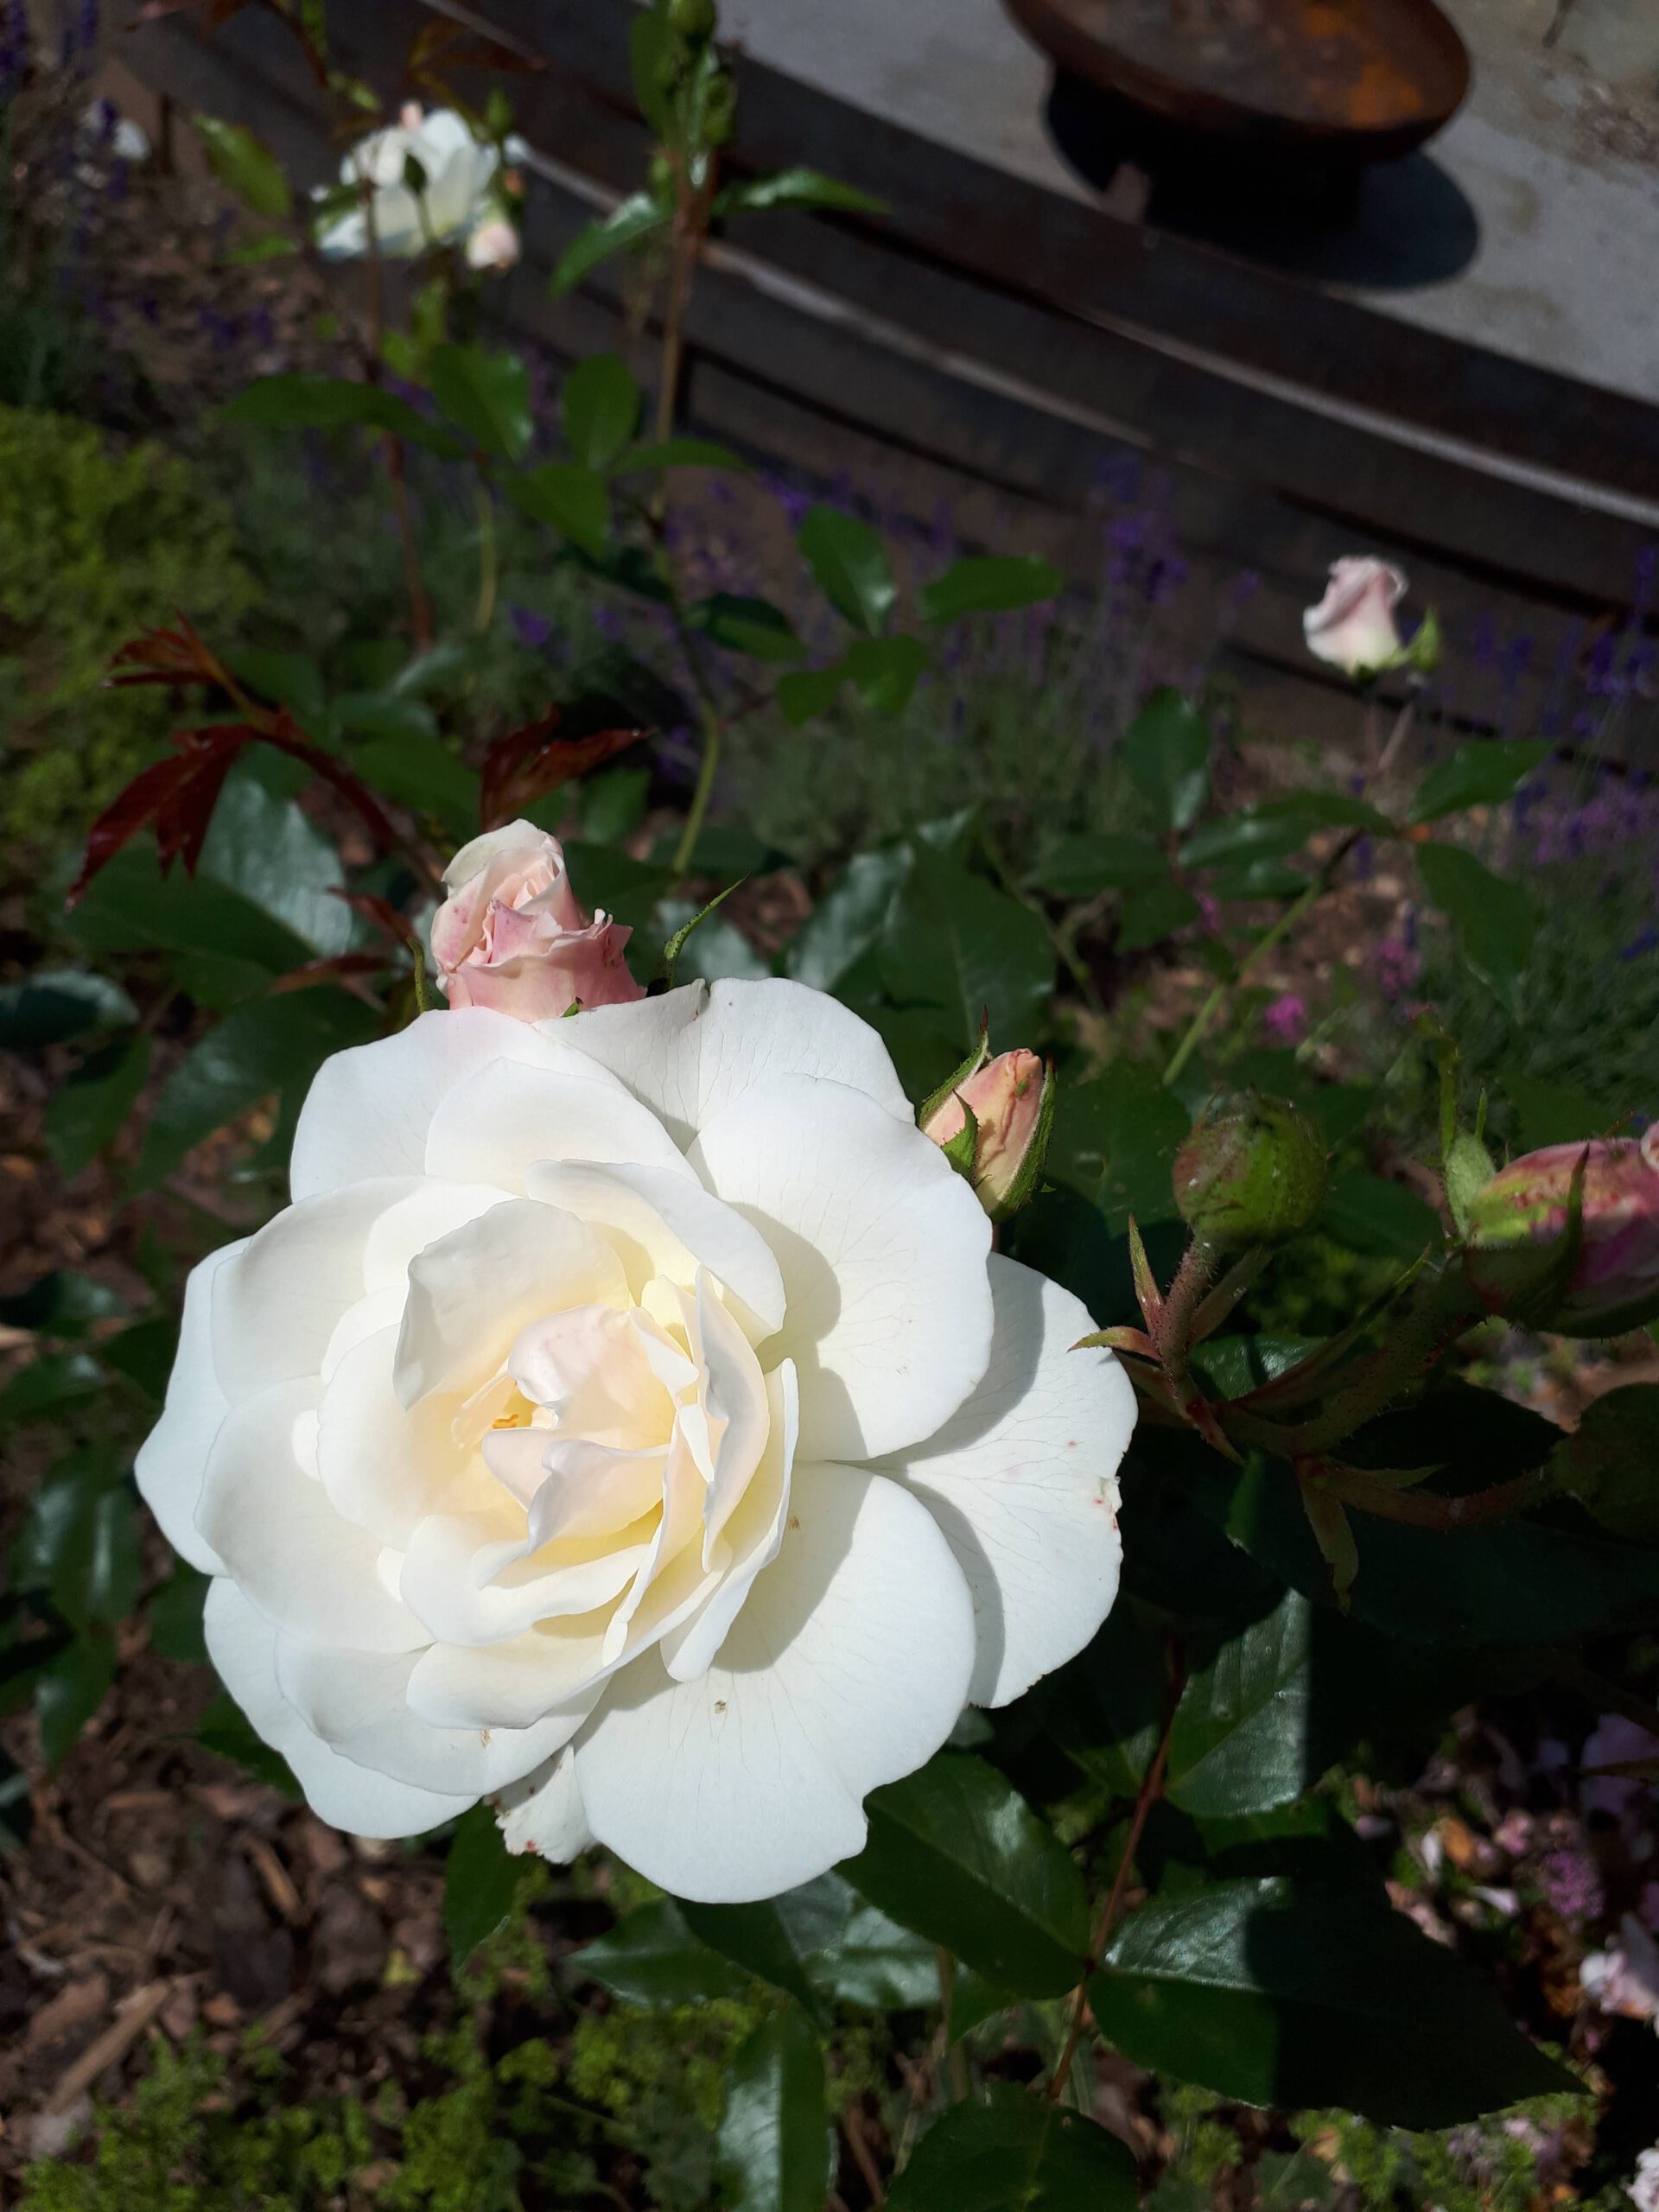 Meine Rosensorten, hier eine unbekannte cremeweiße Sorte die an eine klassische Edelrose erinnert. 